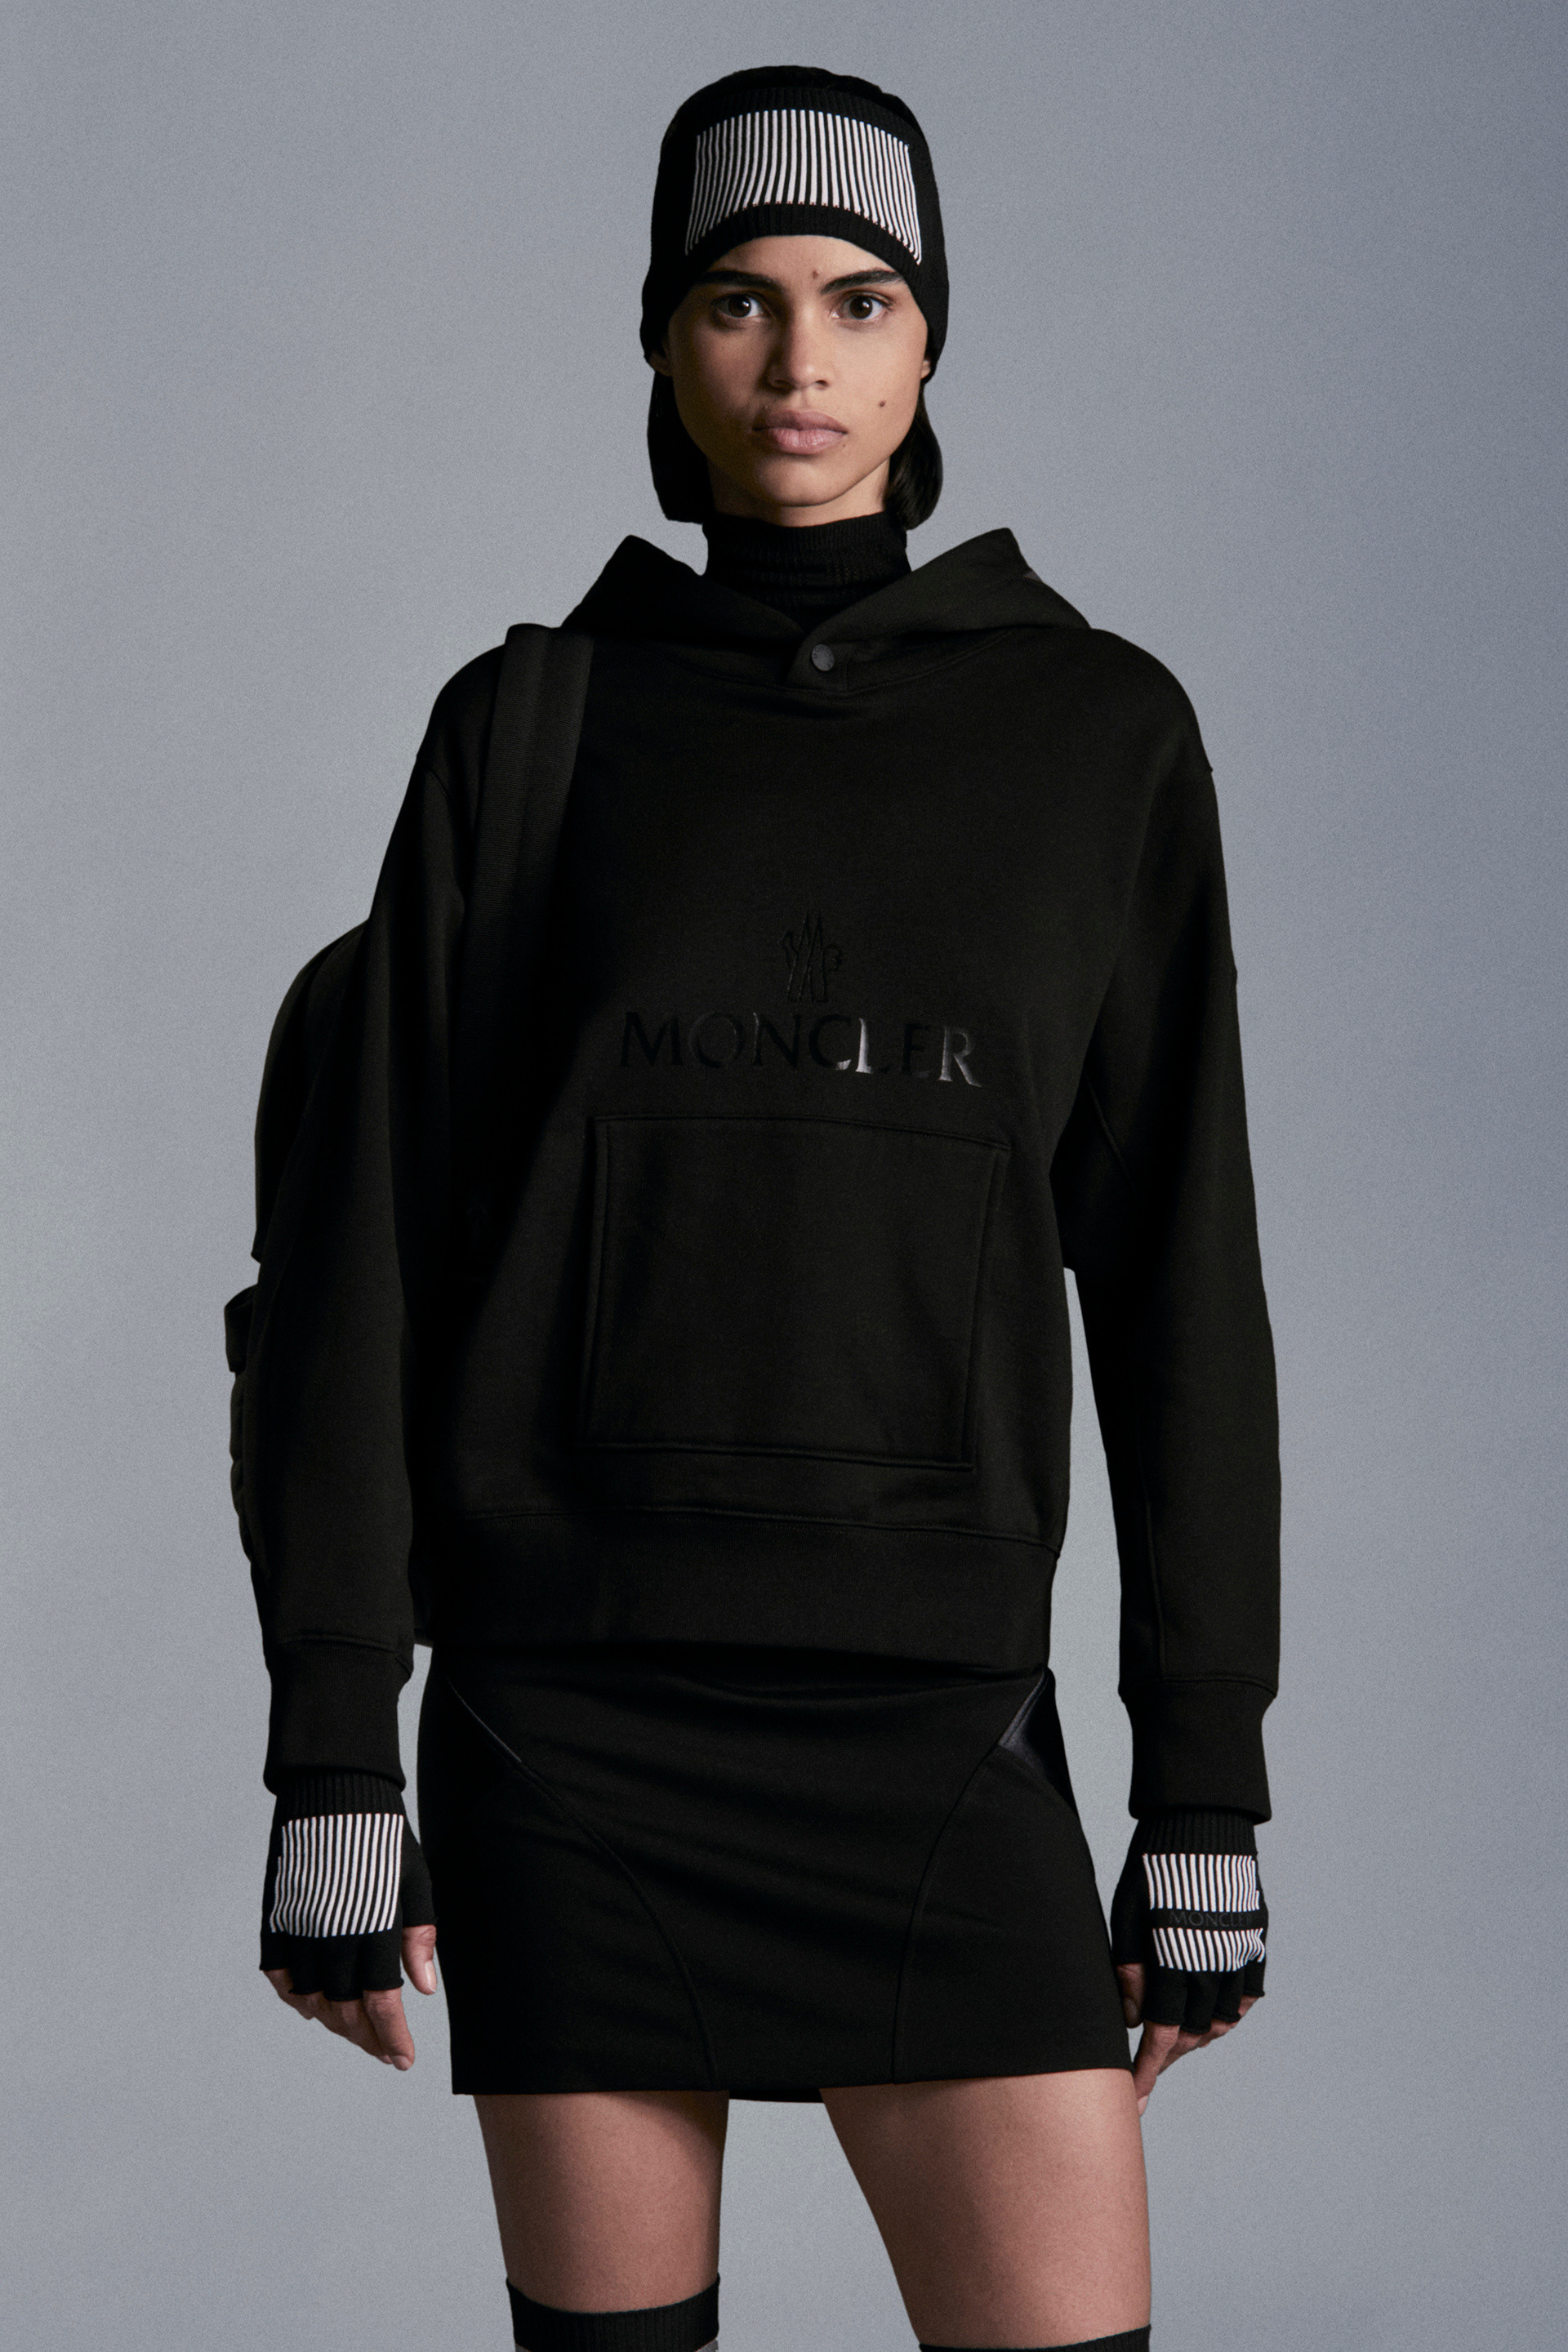 モンクレール Hooded Sweatshirt Dress S ブラック-